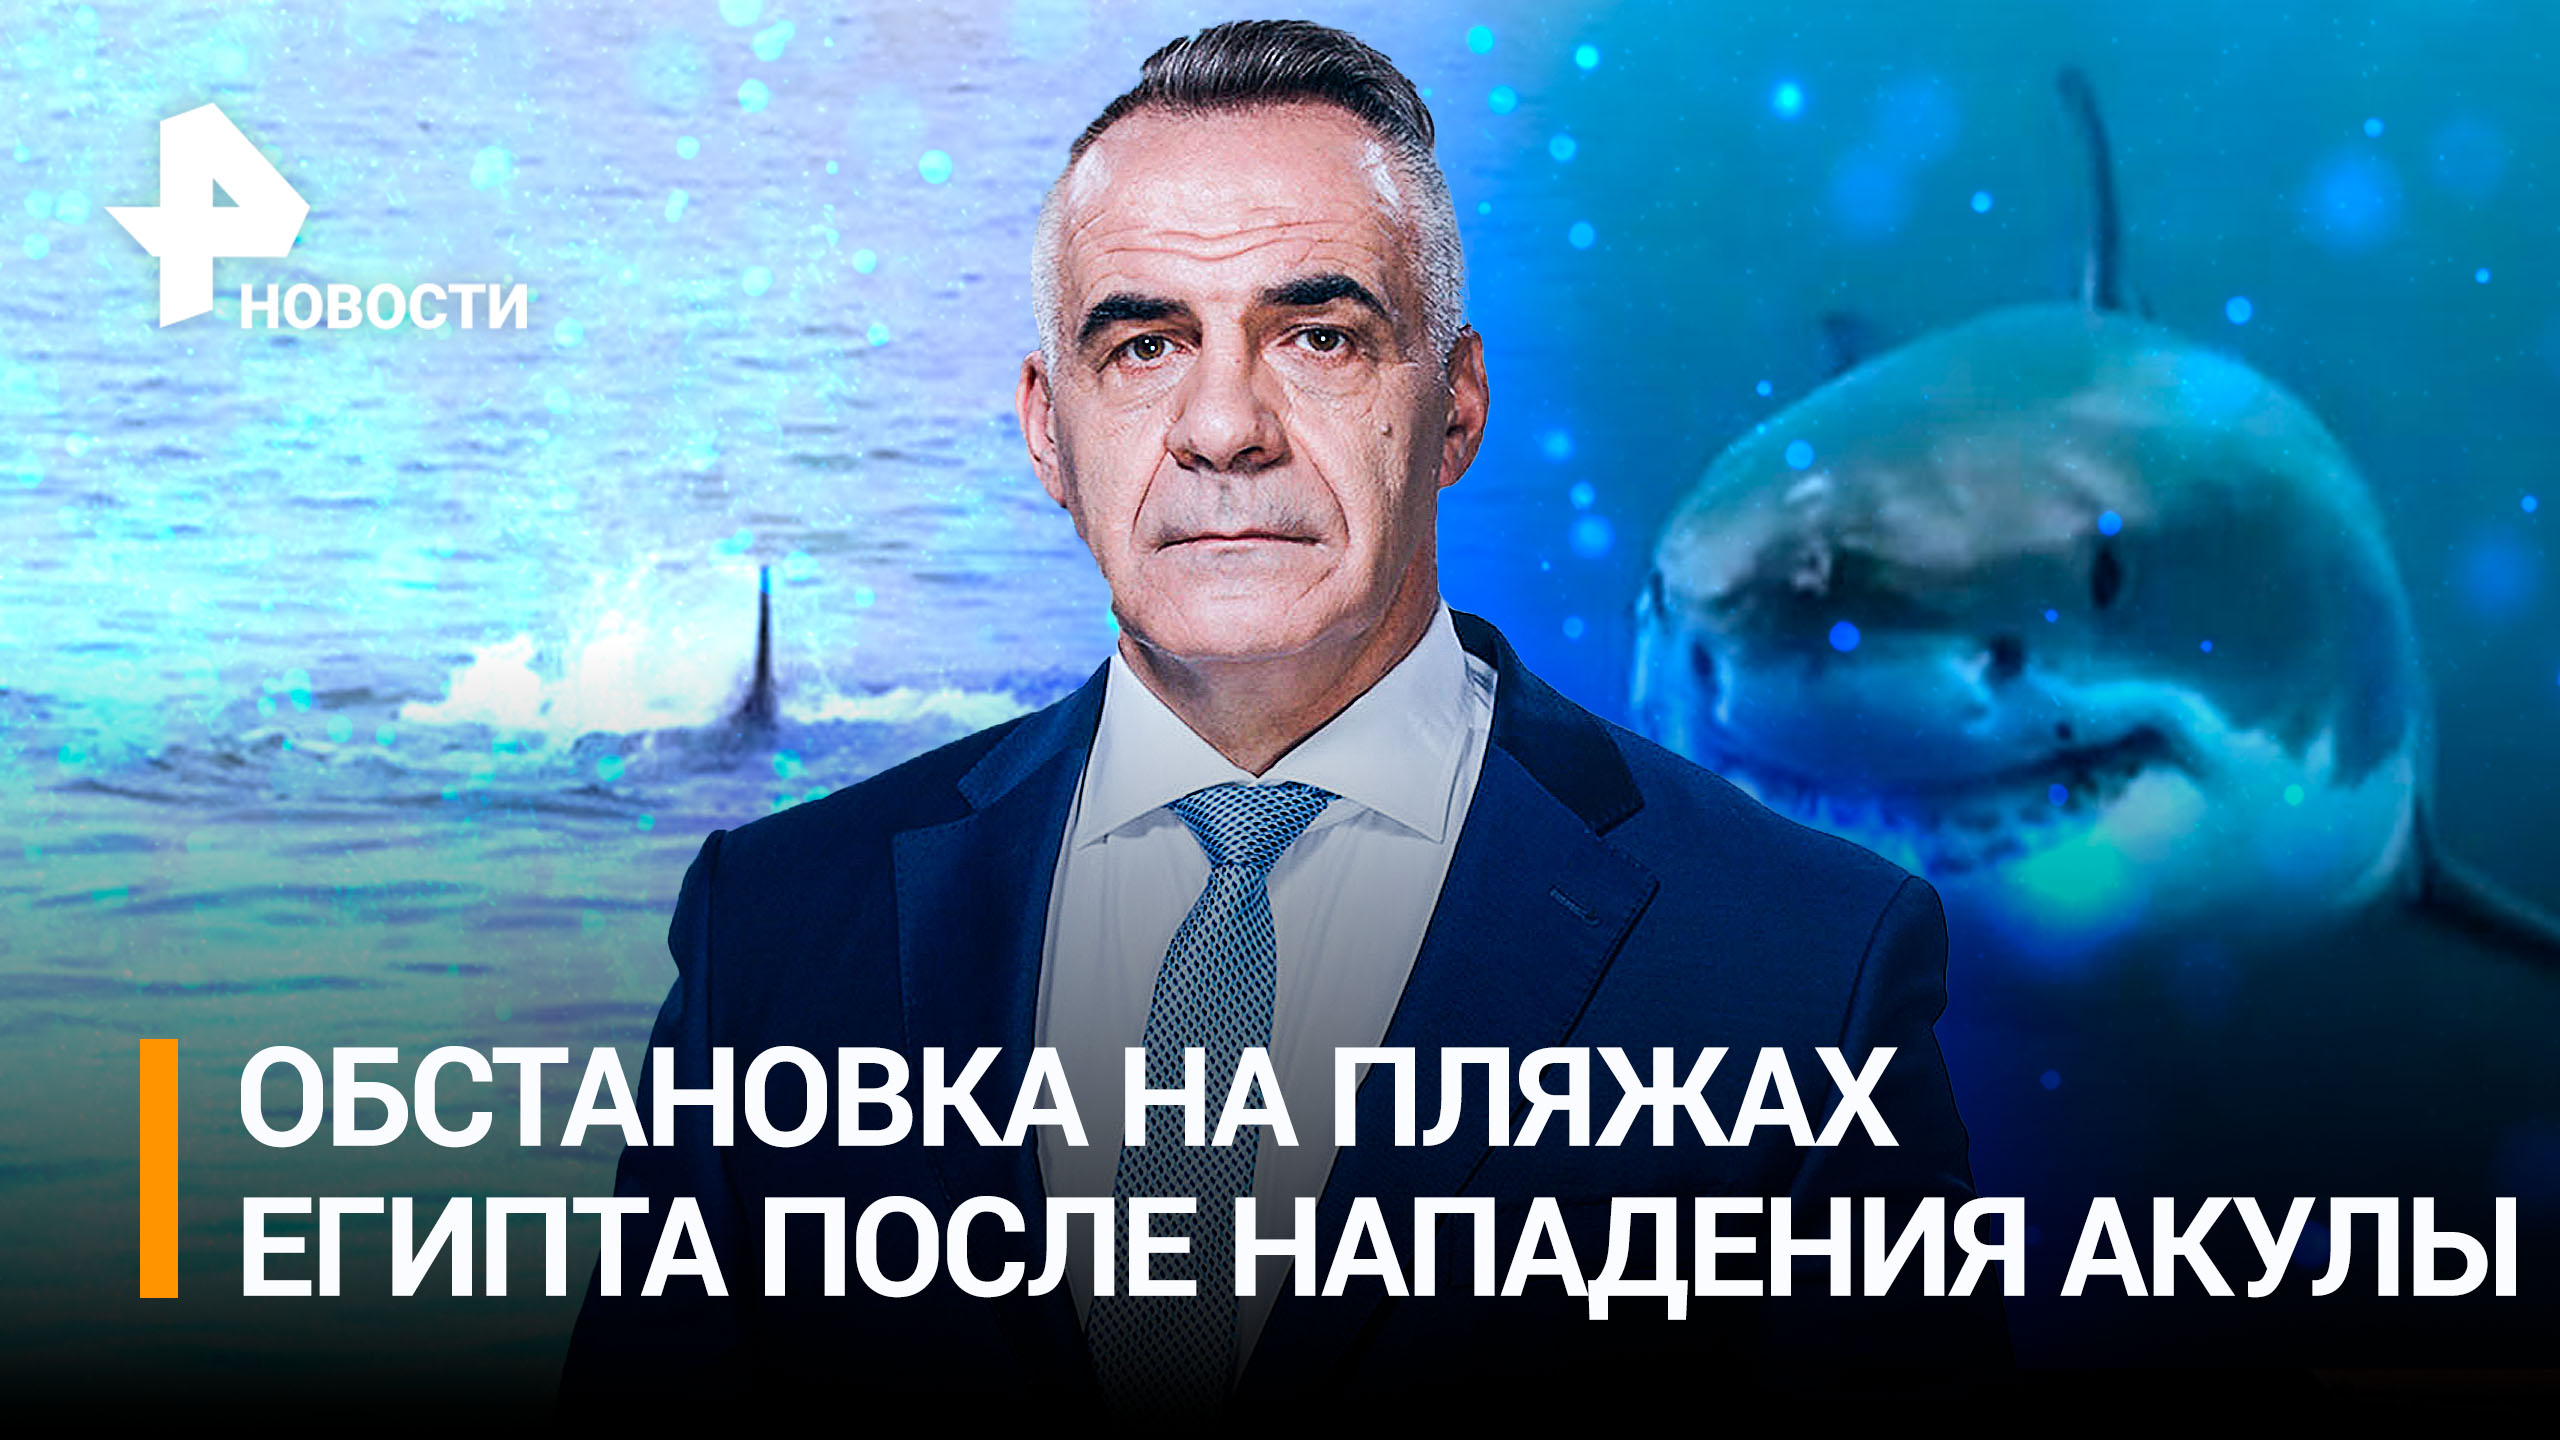 "Челюсти" по-египетски: акула съела россиянина в Хургаде / Итоги недели